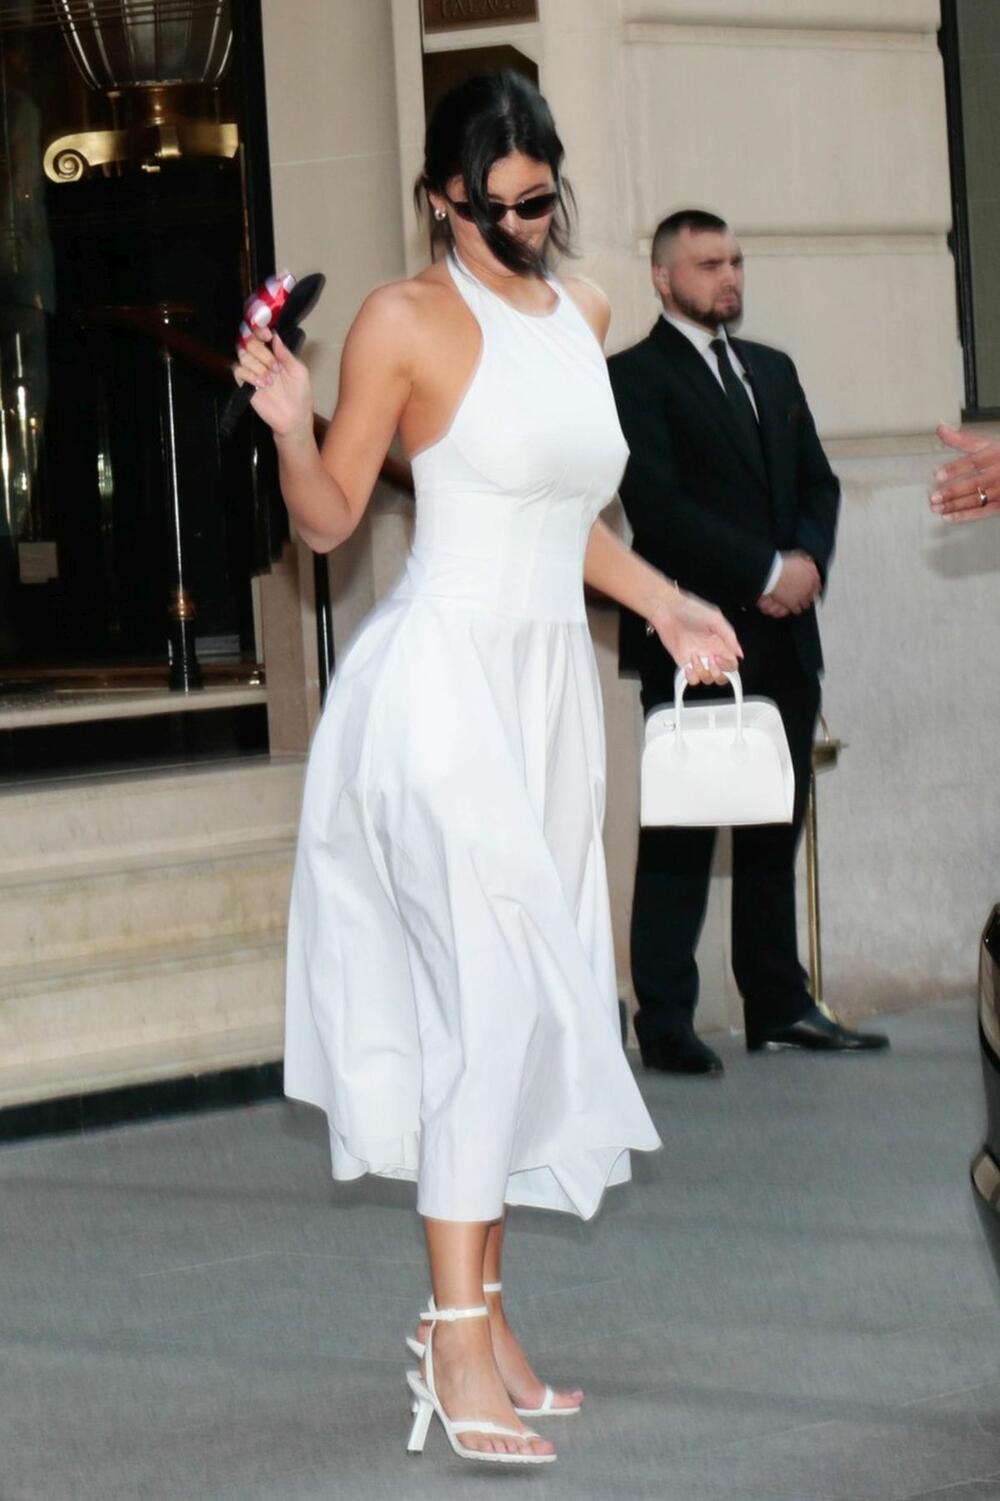 kajli džener viđena j eu beloj fit and flare haljini koja ističe njenu figuru na najbolji mogući način